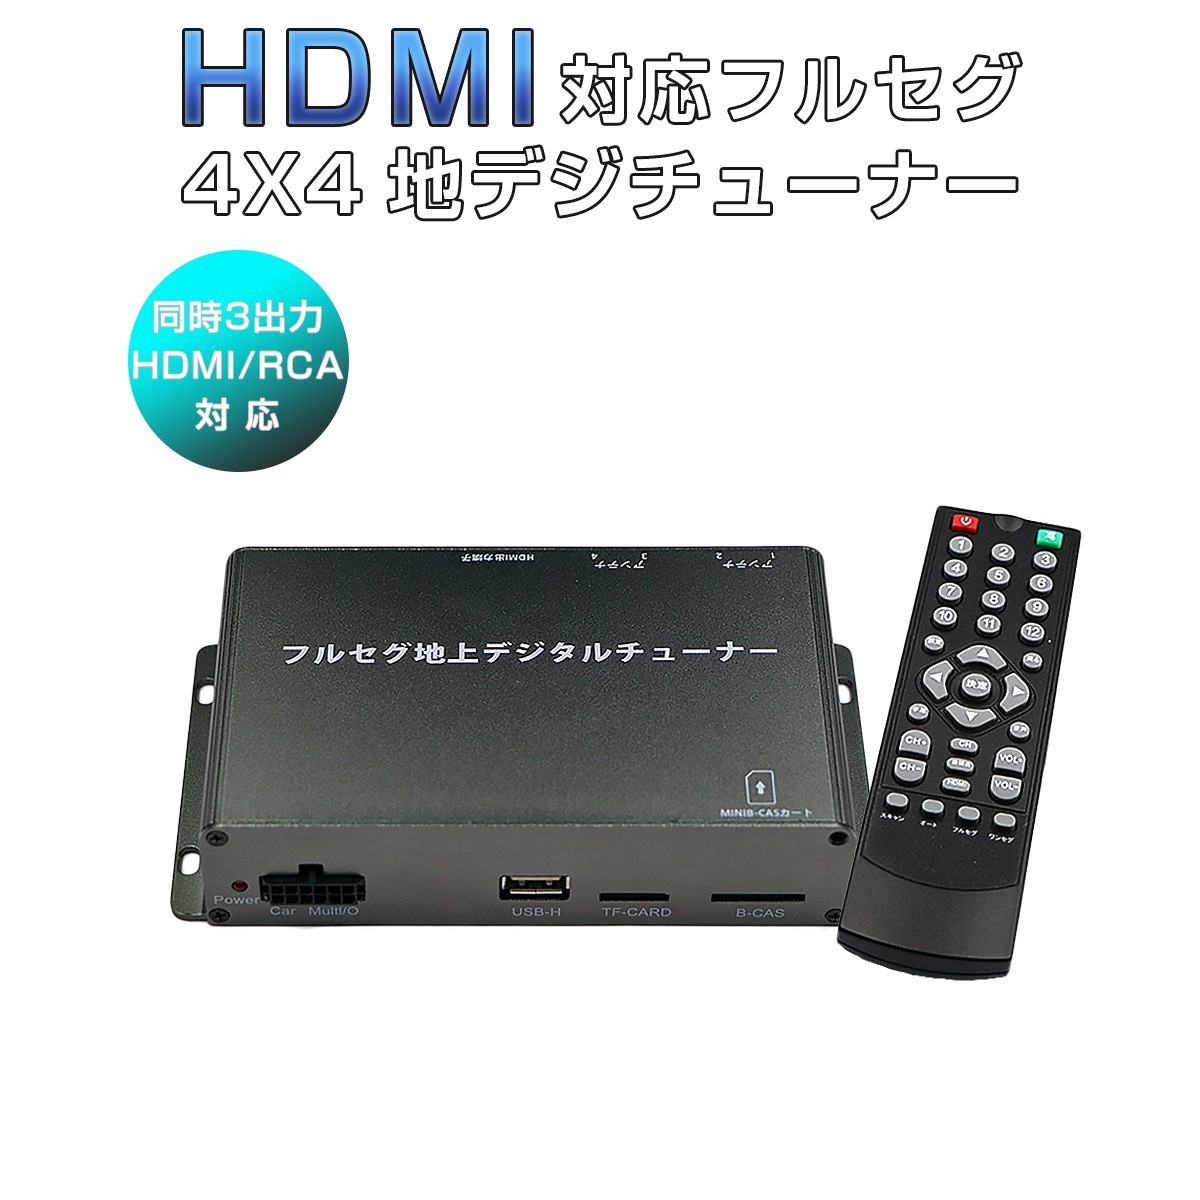  тюнер наземного цифрового радиовещания навигационная система 1 SEG Full seg HDMI 4x4 4 тюнер 4 антенна высокая эффективность высокое разрешение TV автомобильный miniB-CAS карта имеется 6 месяцев гарантия 